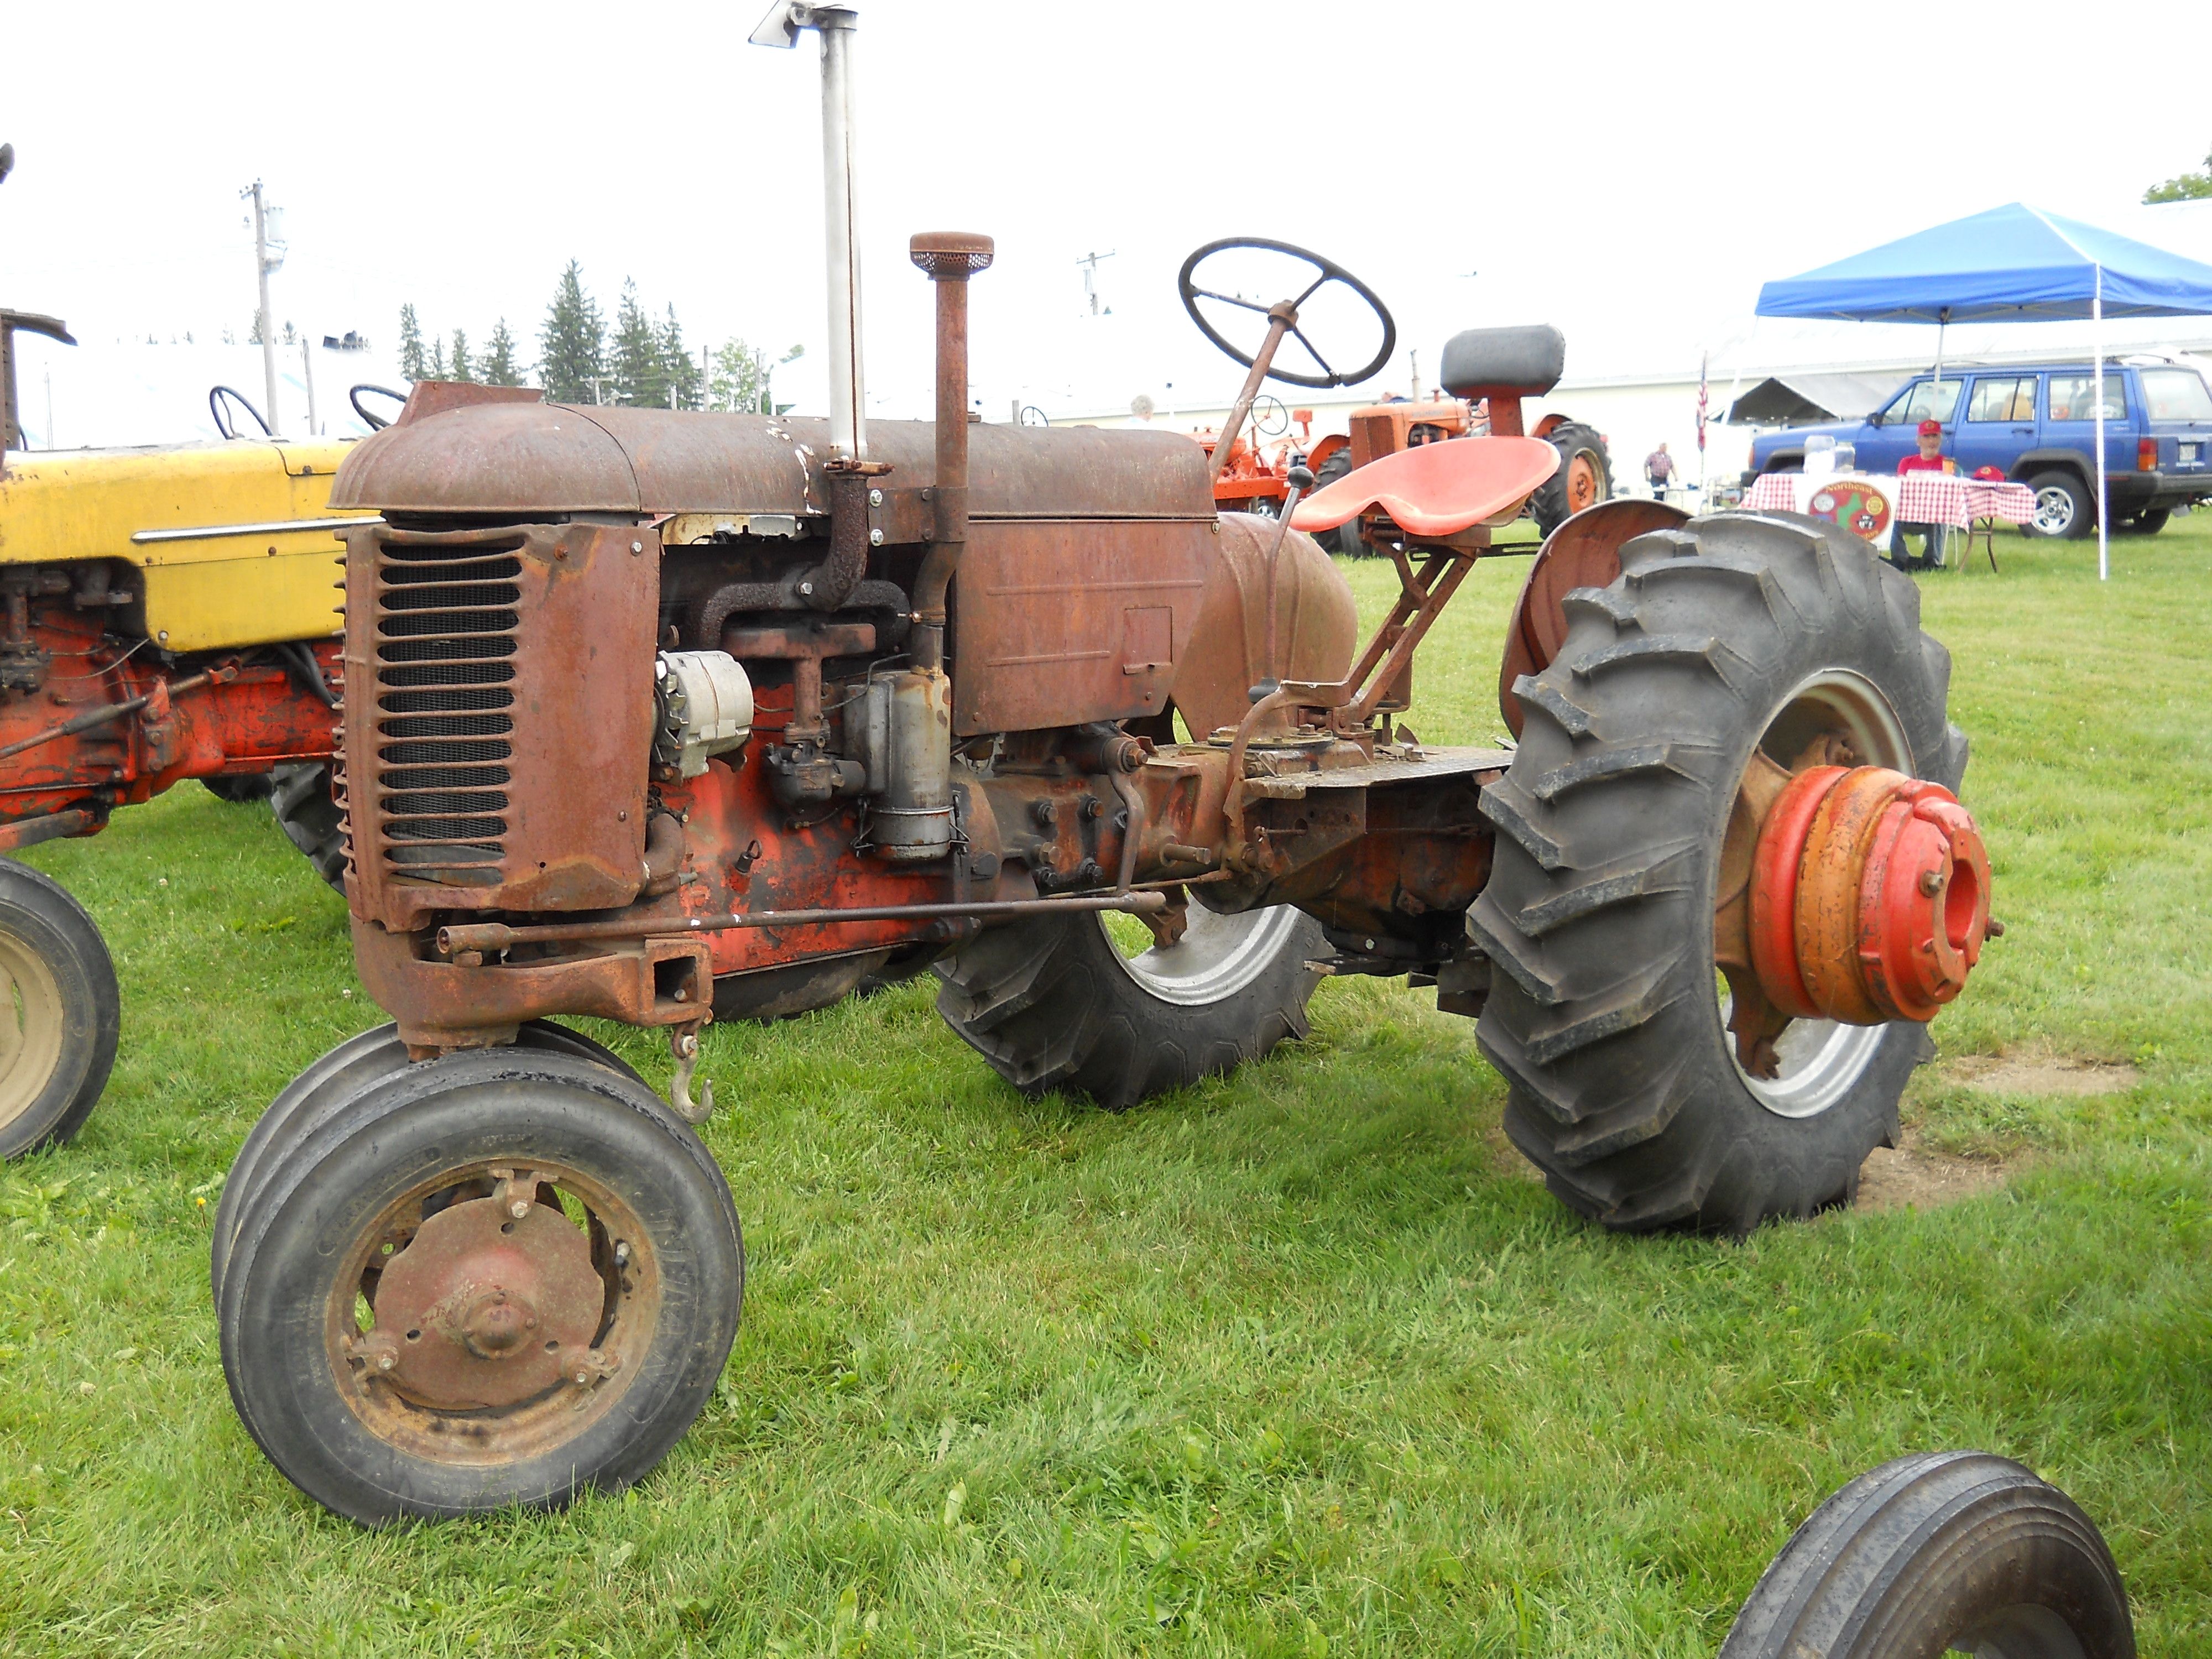 Tractor vintage porn